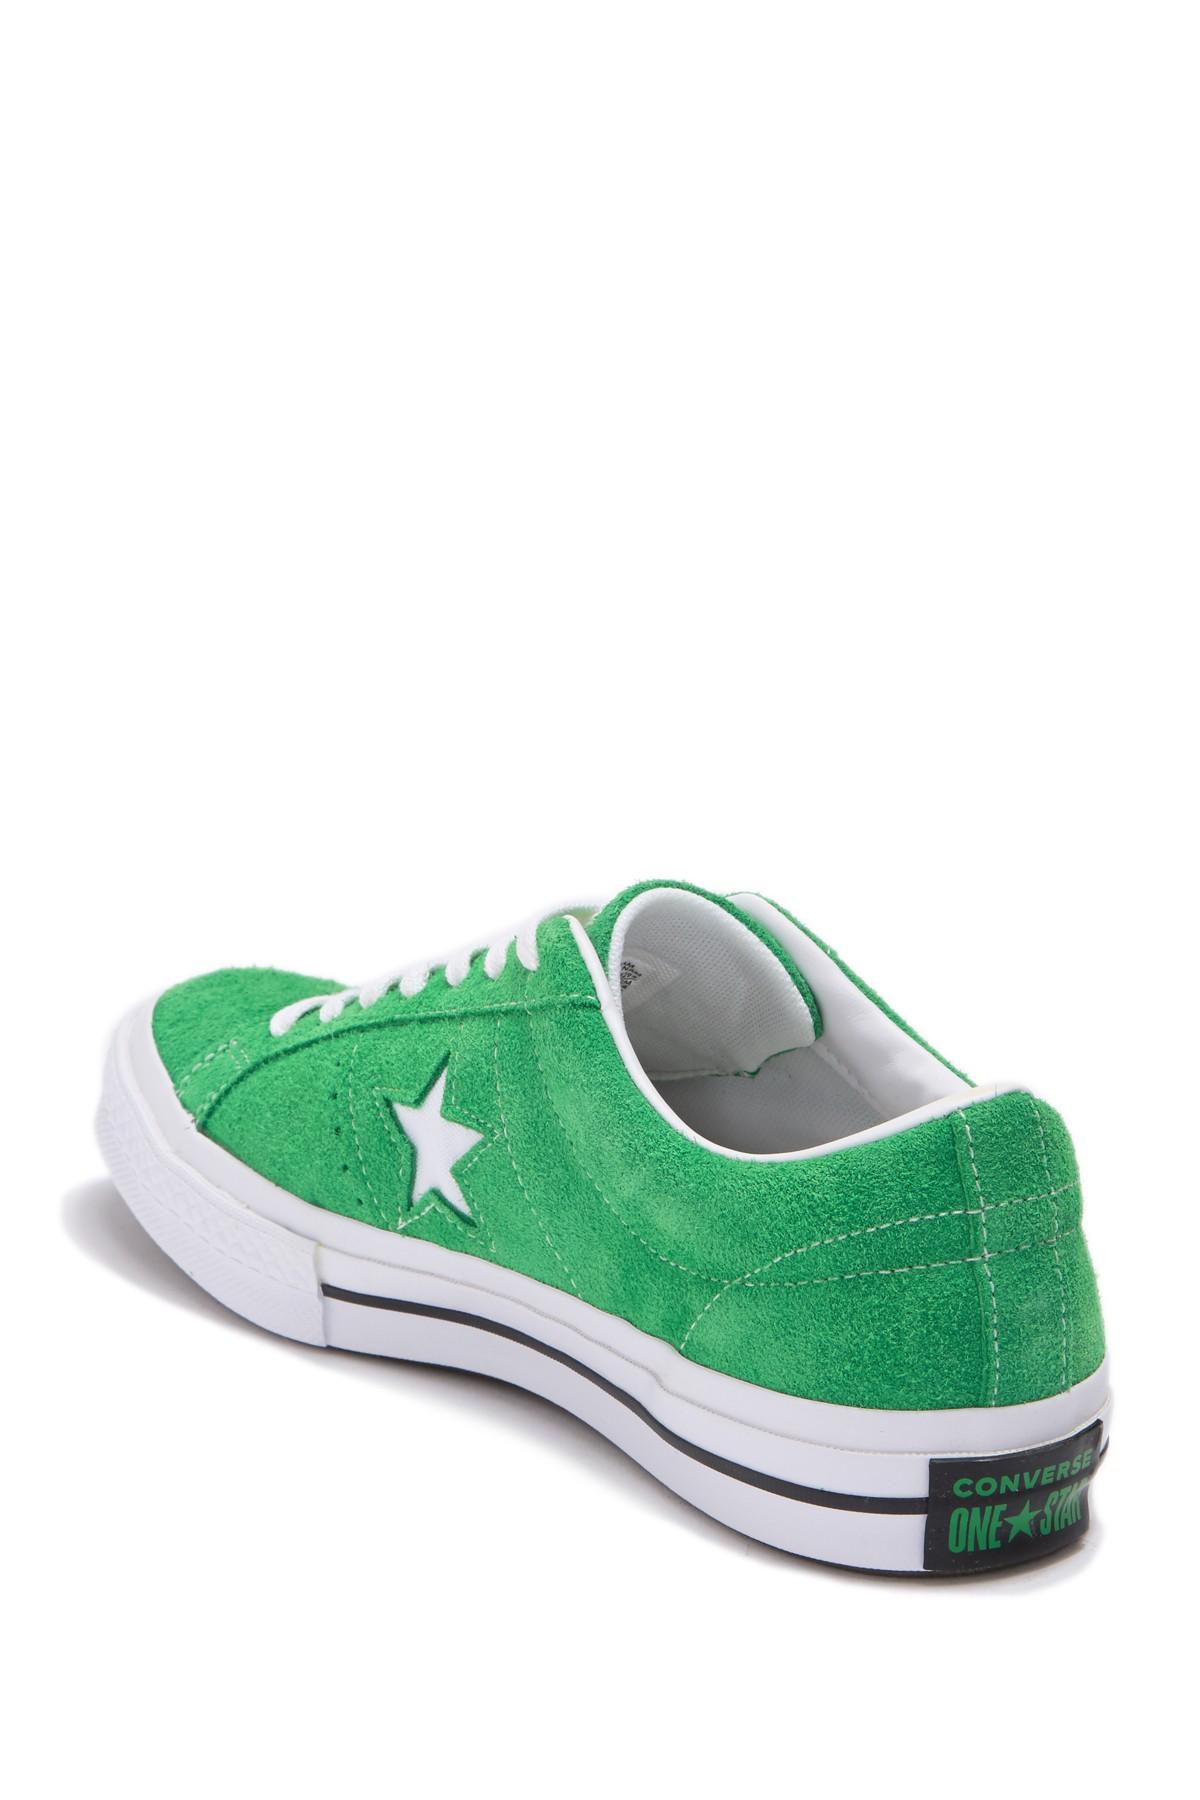 overrasket lærer Anstændig Converse One Star Oxford Suede Green Star Sneaker (unisex) for Men - Lyst